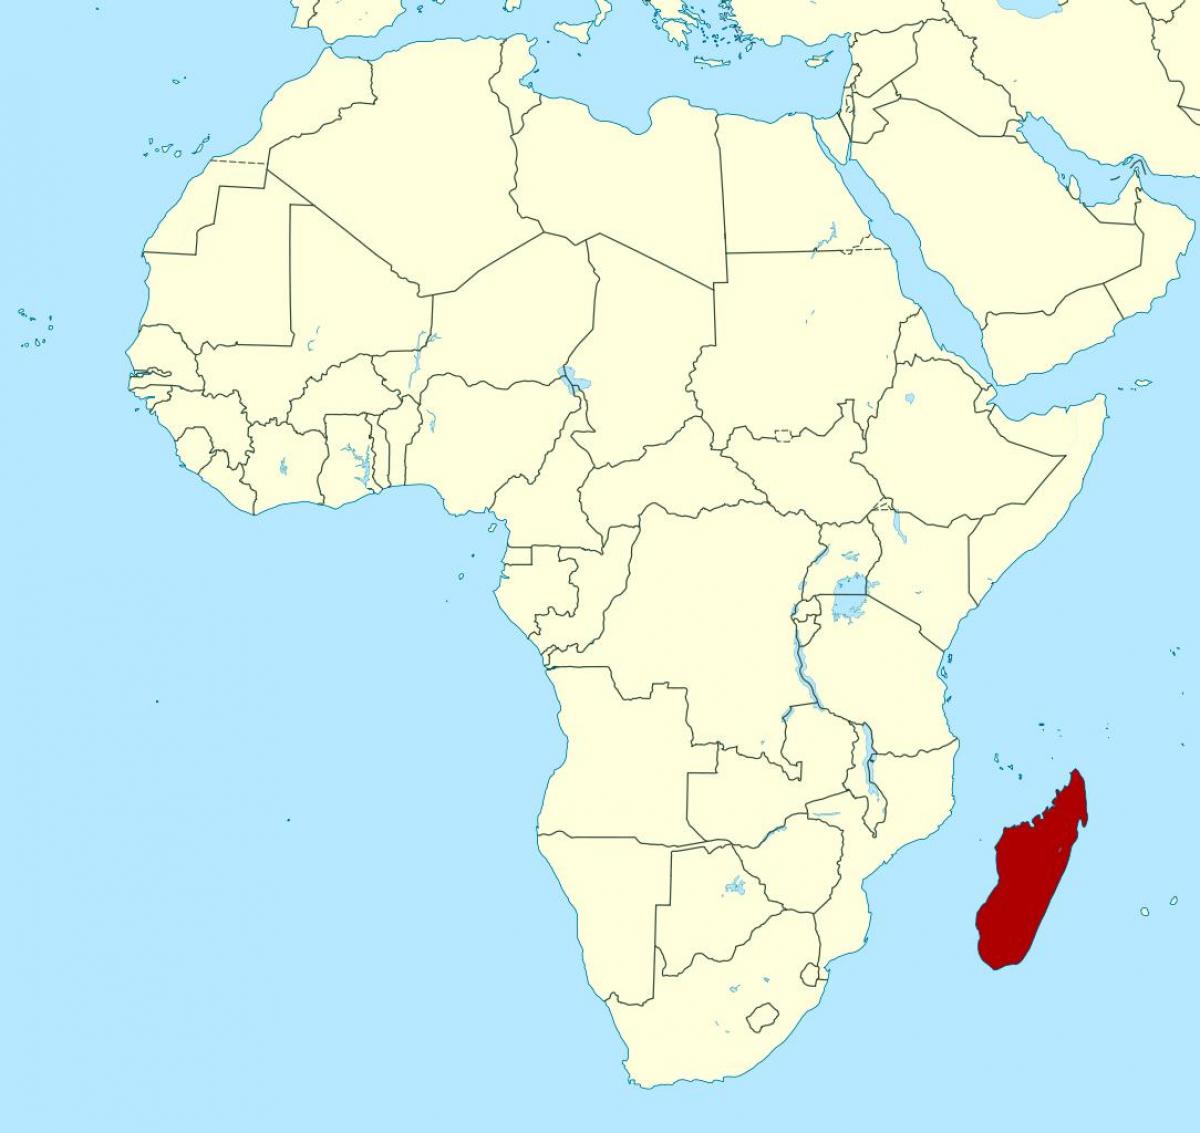 מדגסקר על מפת אפריקה